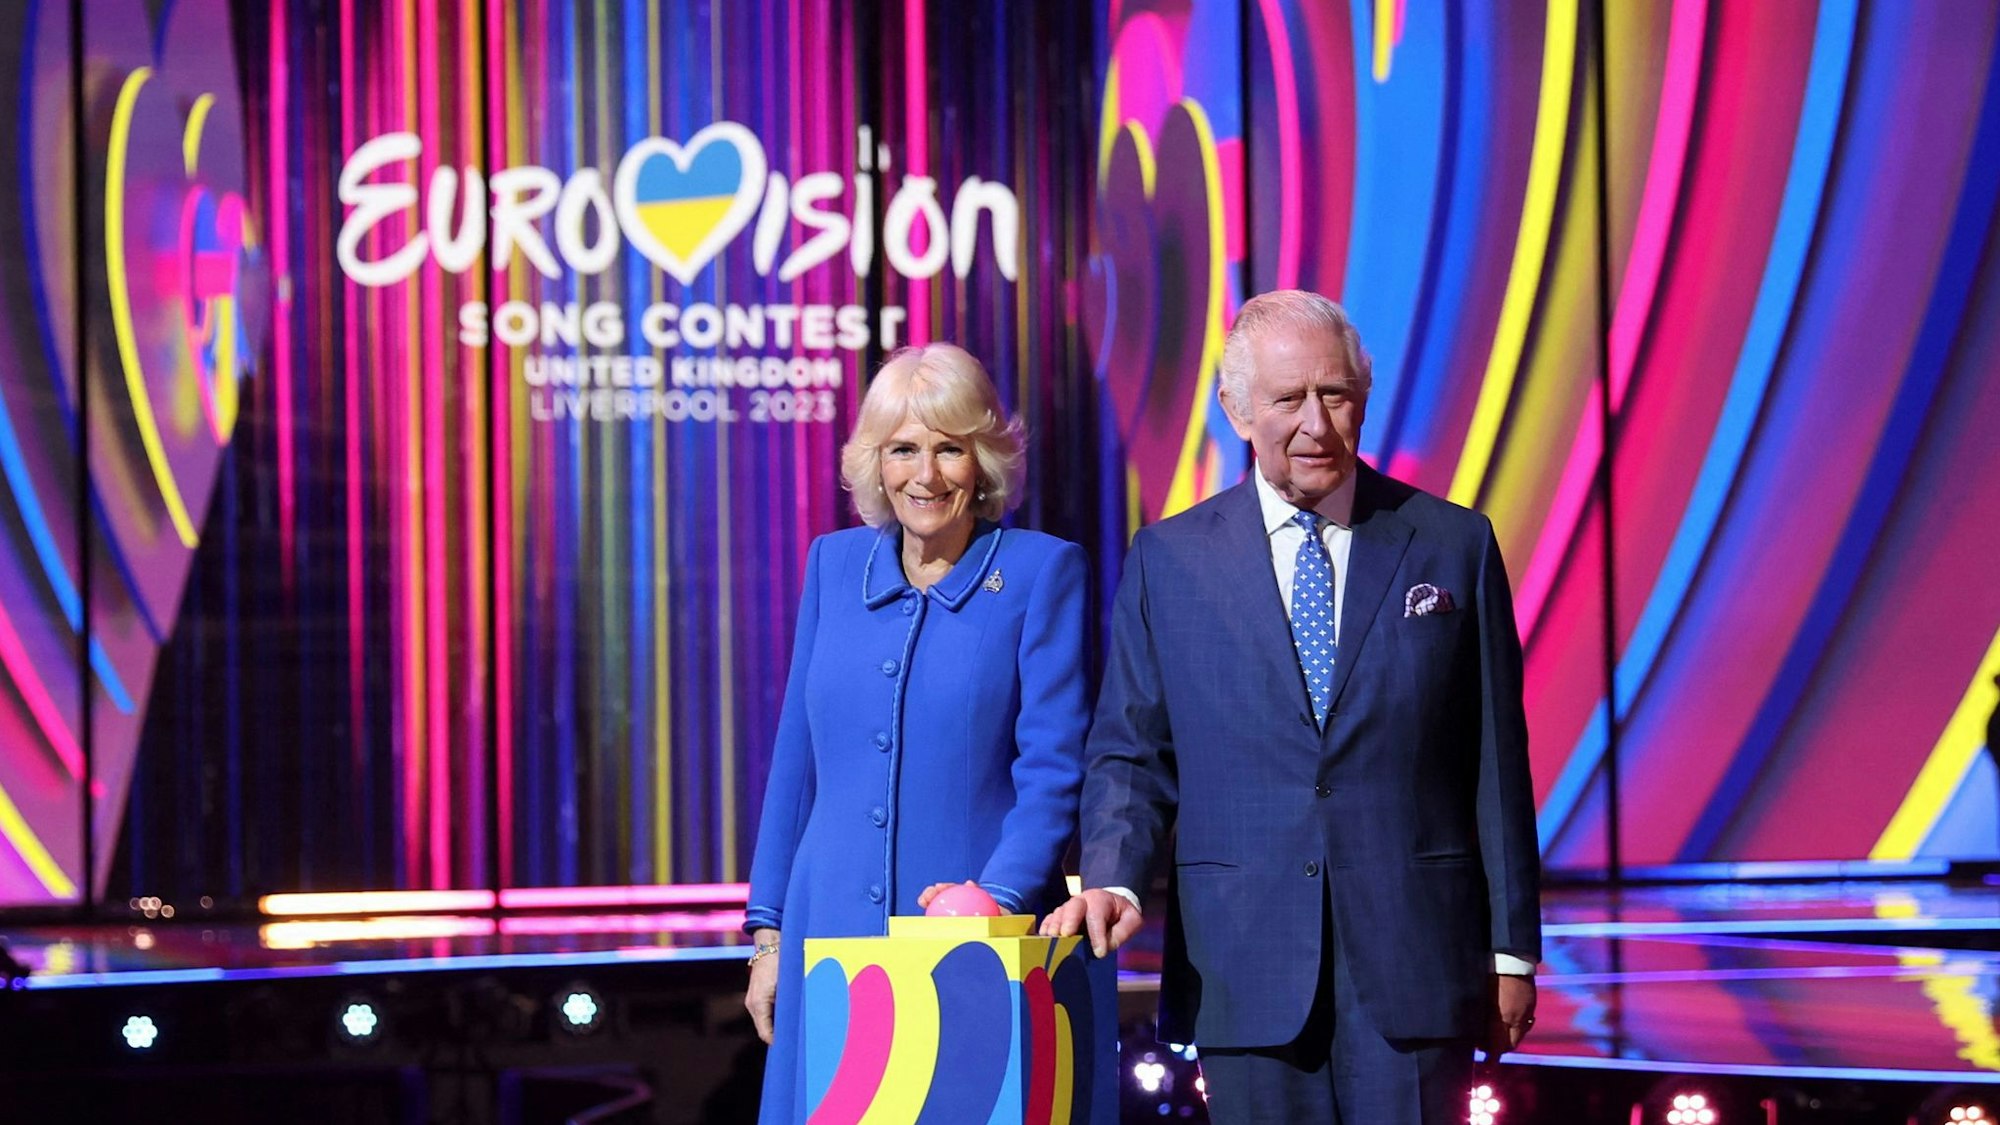 Der britische König Charles III. und seine Frau Königin Camilla nach dem Einschalten der Bühnenbeleuchtung bei ihrem Besuch der M&S Bank Arena in Liverpool, dem Austragungsort des diesjährigen Eurovision Song Contest, am 26. April 2023 in Liverpool.